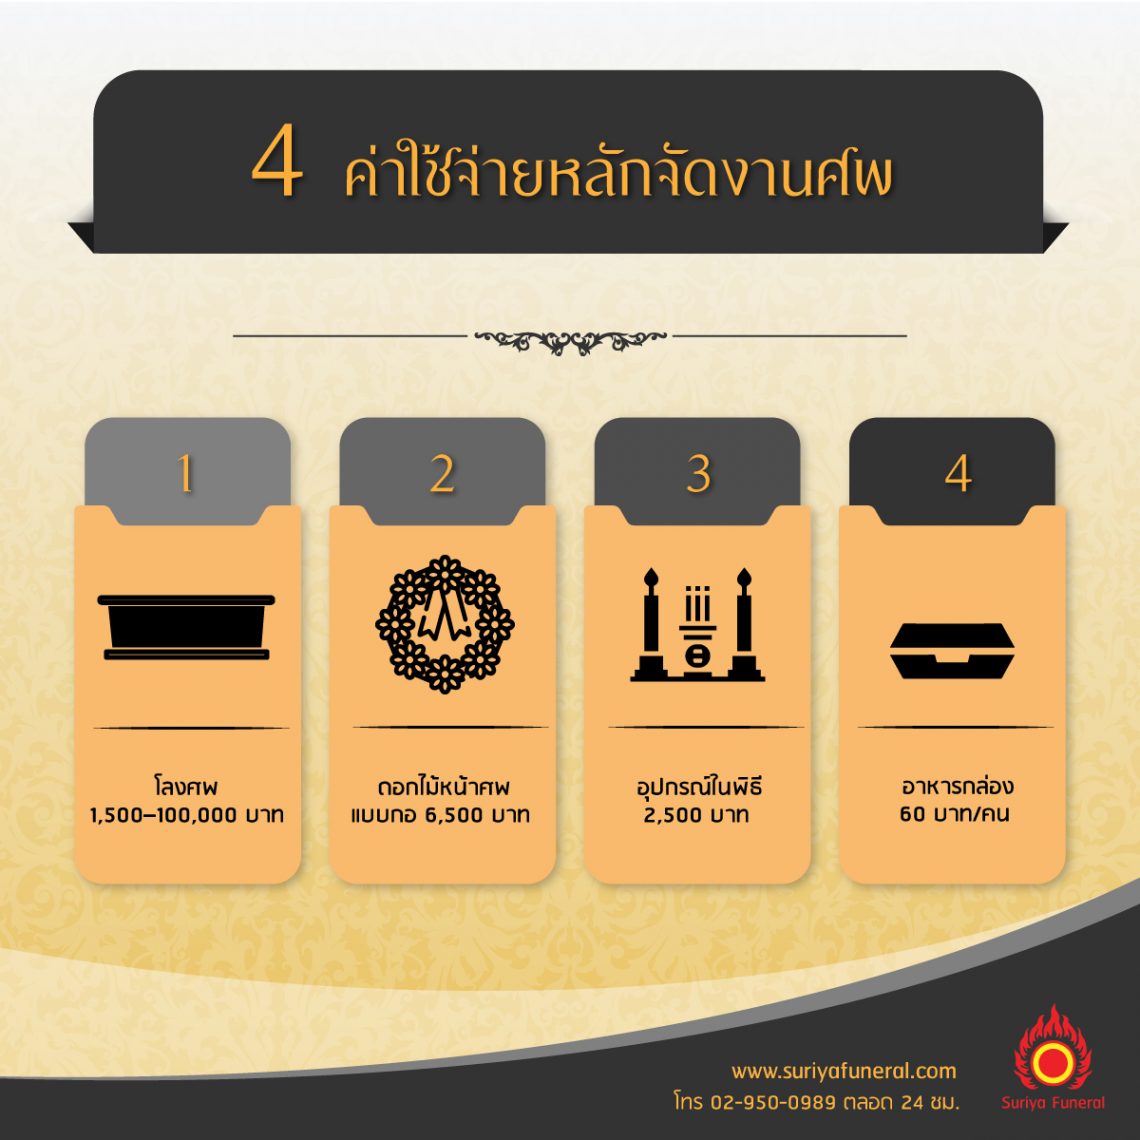 4 ปัจจัยค่าใช้จ่ายหลักจัดงานศพ สุริยาหีบศพจัดงานศพอันดับ 1 ในไทย